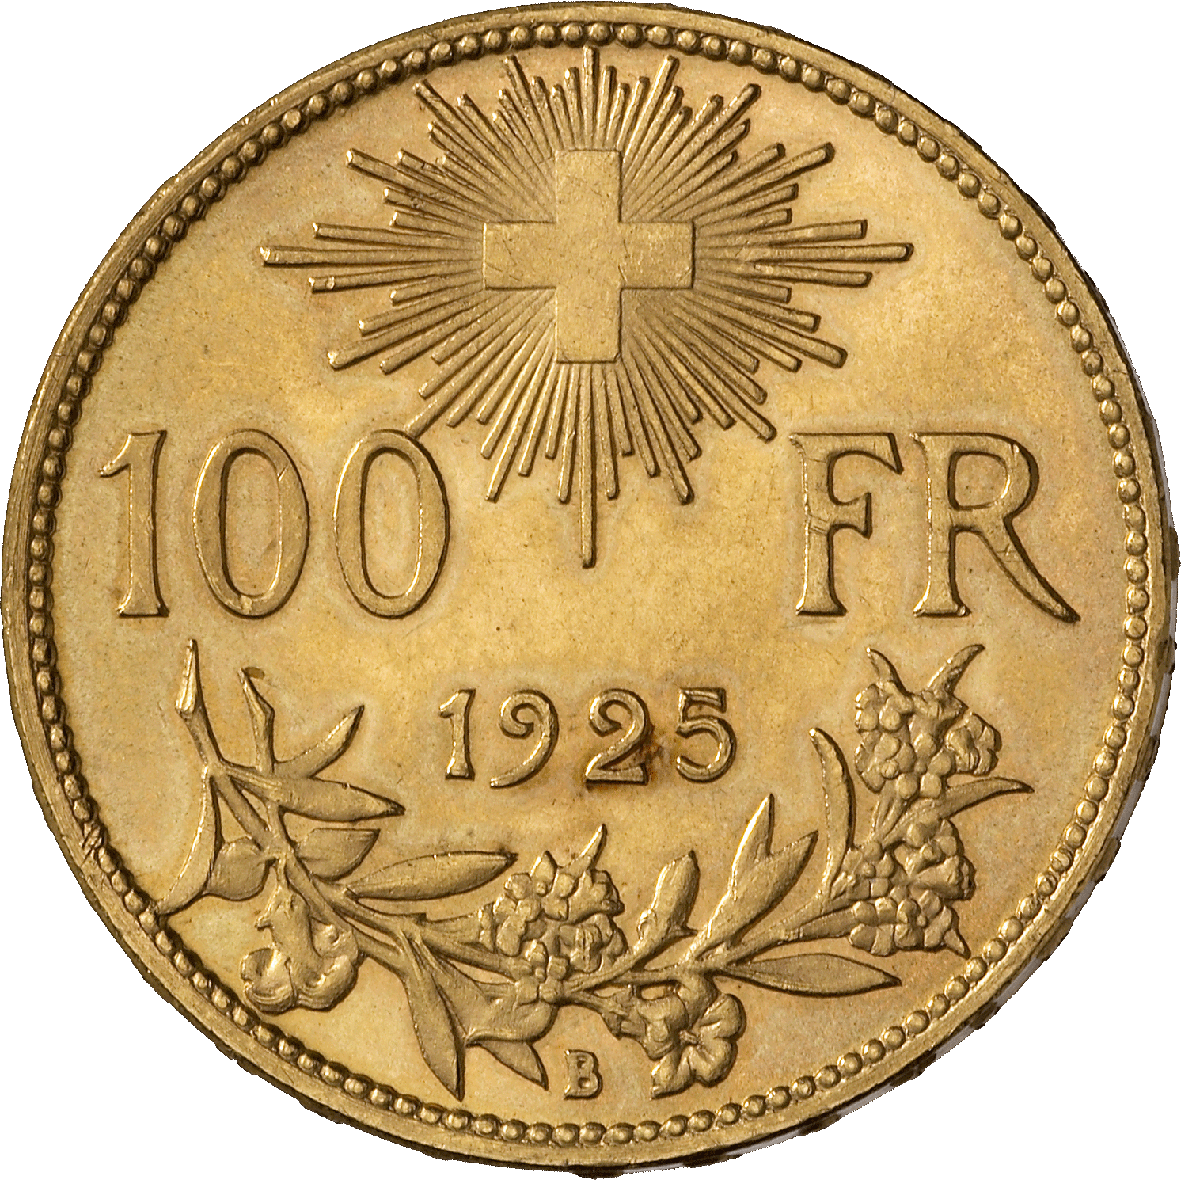 Schweizerische Eidgenossenschaft, 100 Franken (Vreneli) 1925 (reverse)